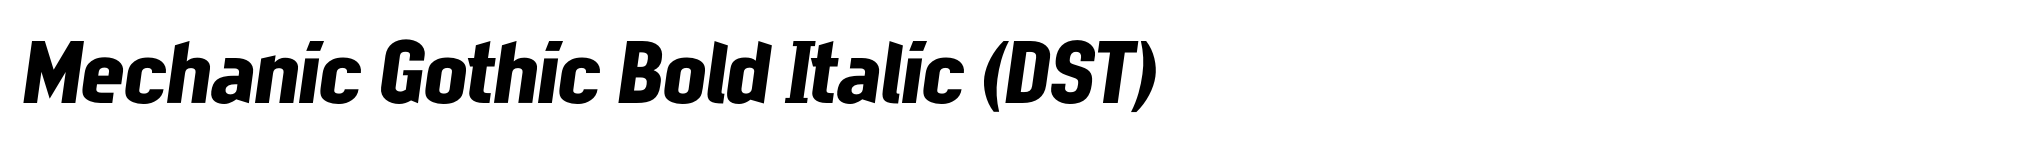 Mechanic Gothic Bold Italic (DST) image